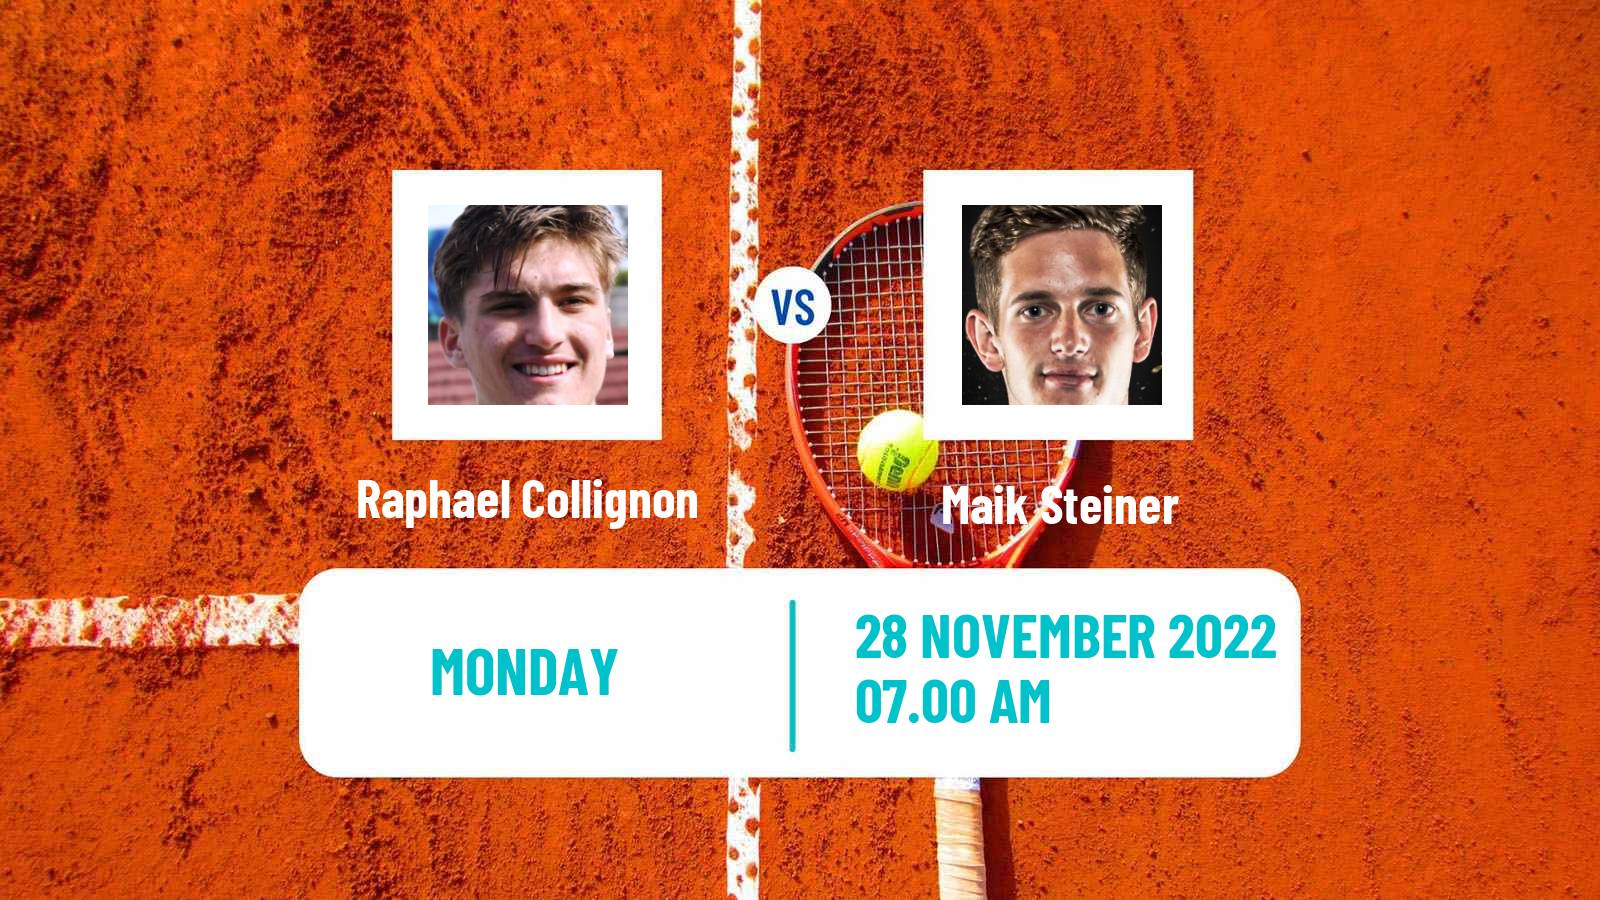 Tennis ATP Challenger Raphael Collignon - Maik Steiner